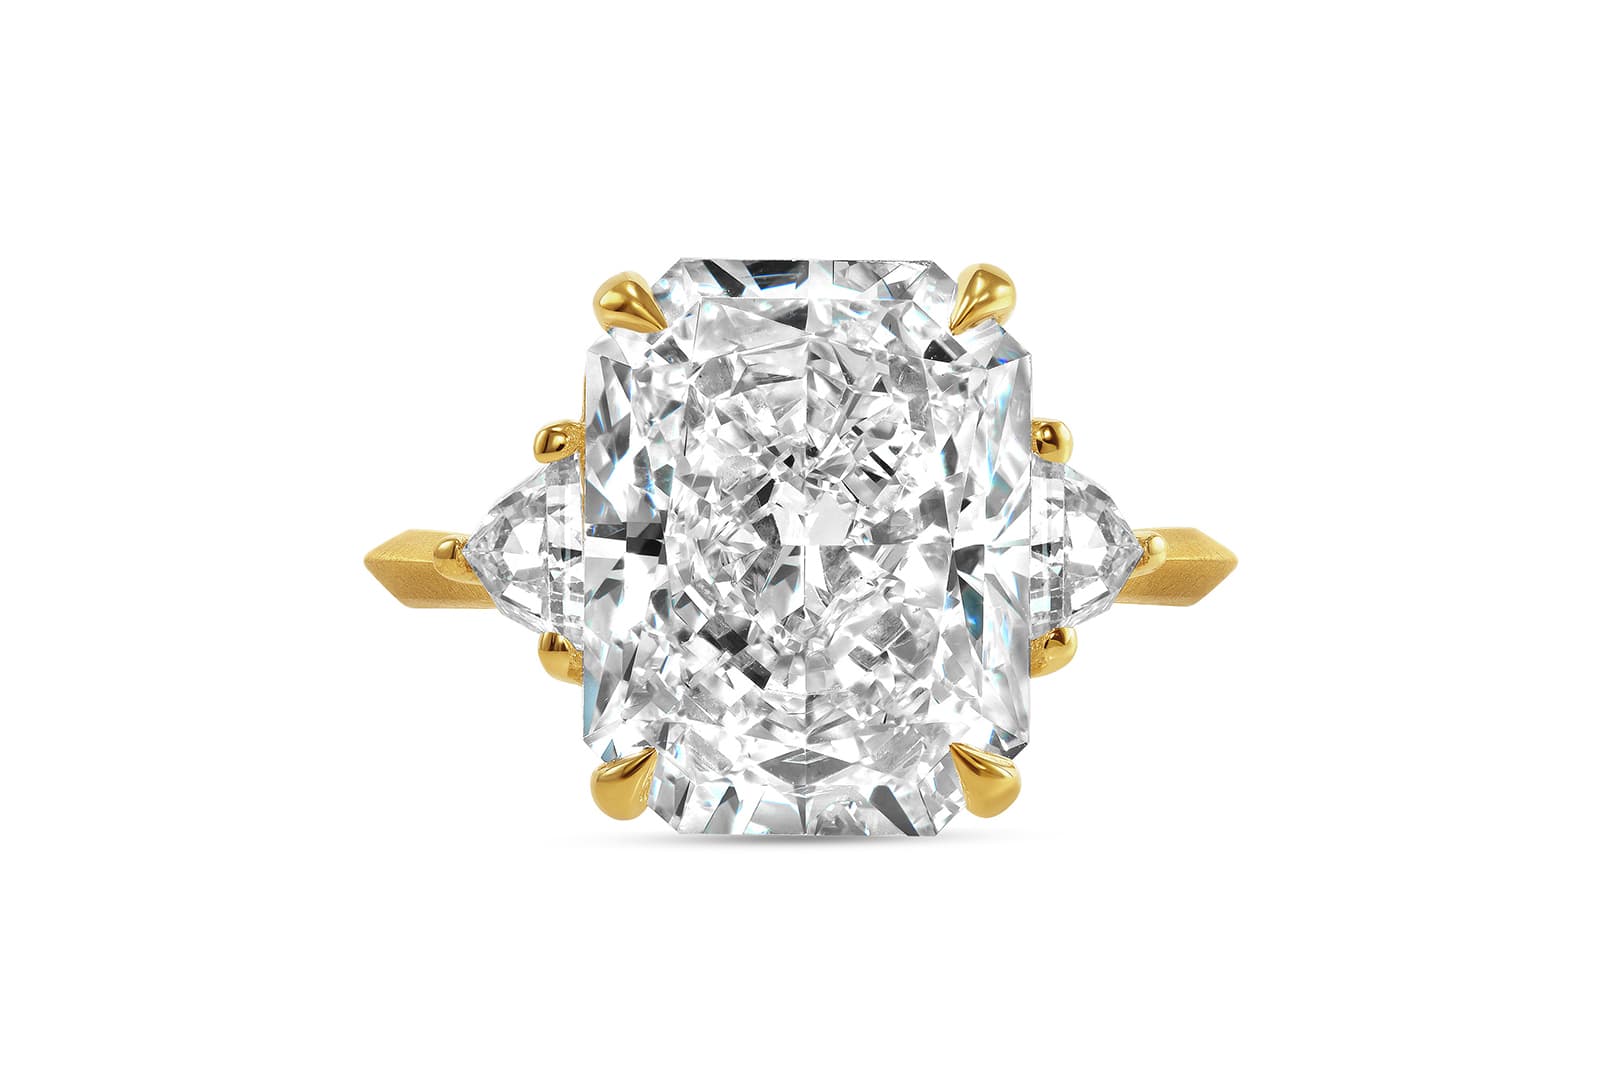 IceRock Diamonds специализируется на украшениях с крупными бриллиантами